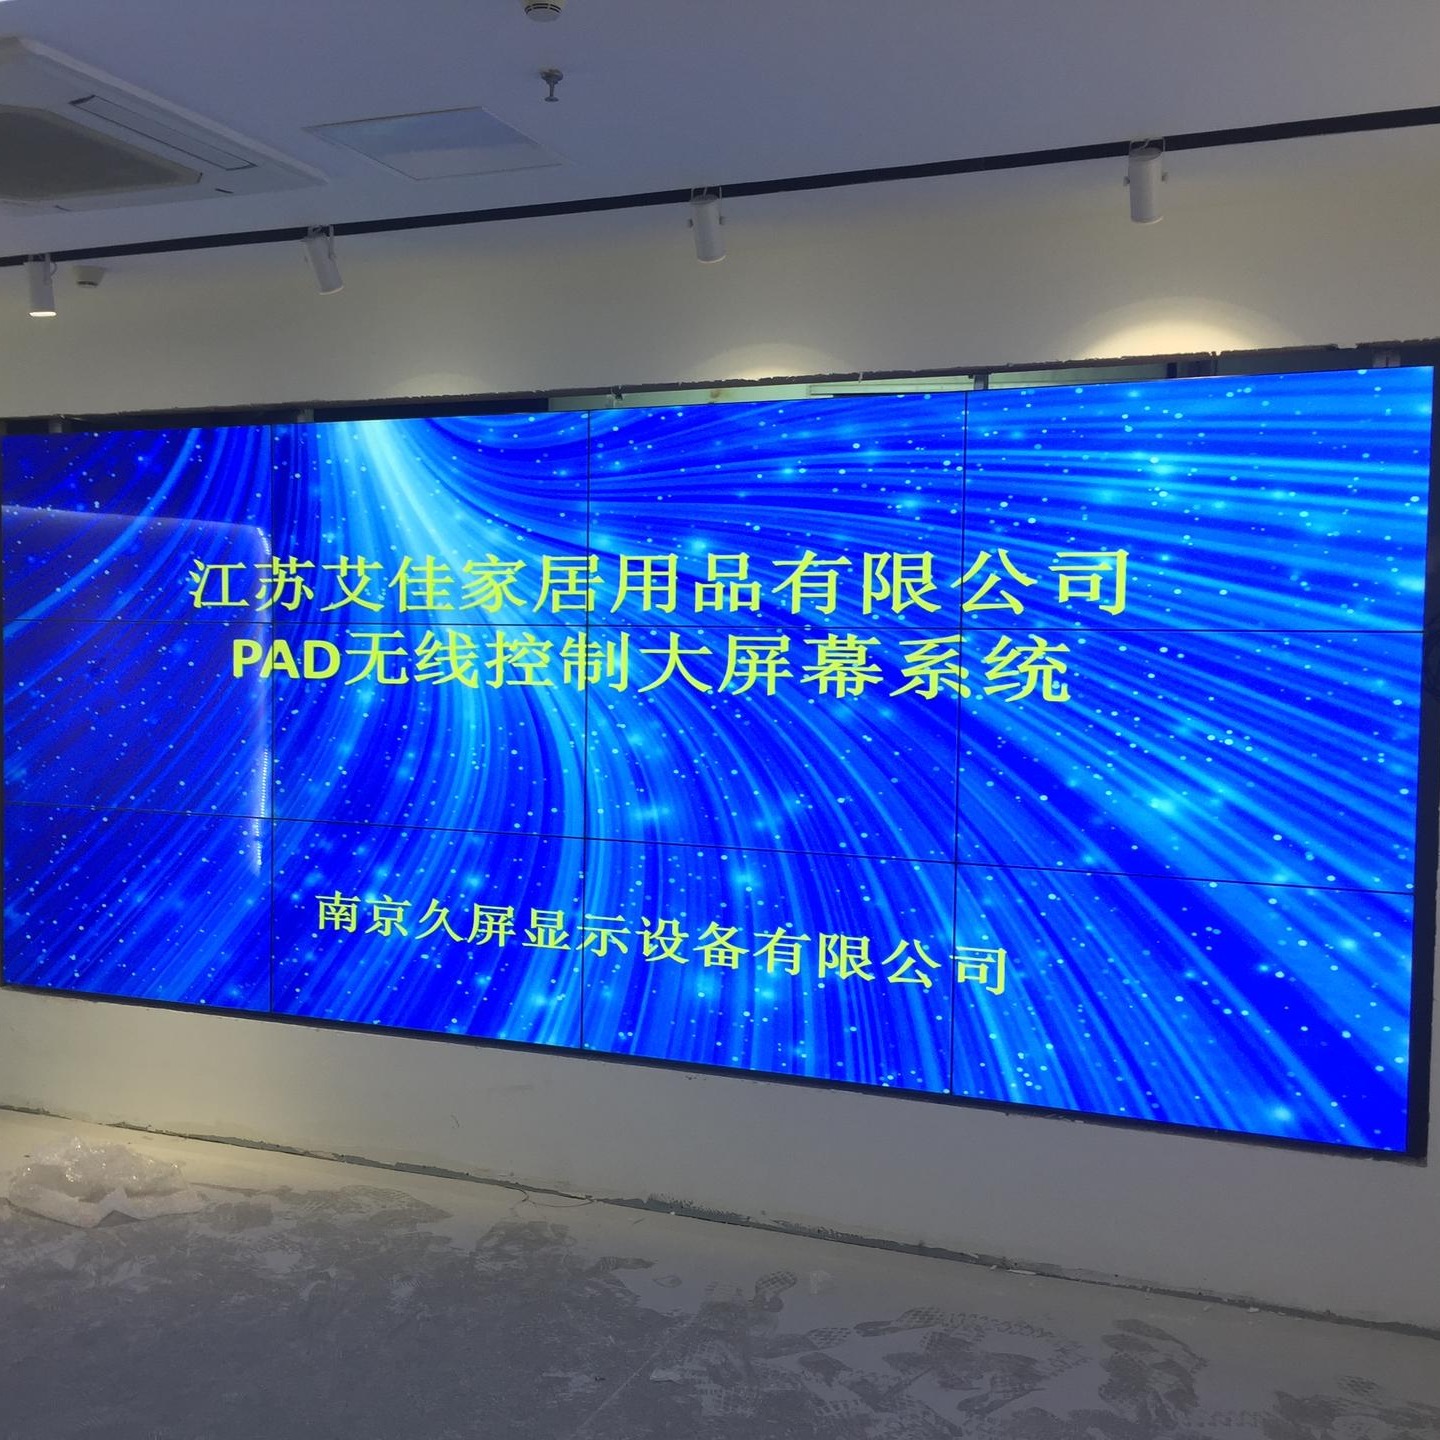 安徽拼接屏厂家 淮南 55寸液晶拼接屏 LCD大屏幕显示 拼接大屏 久屏显示